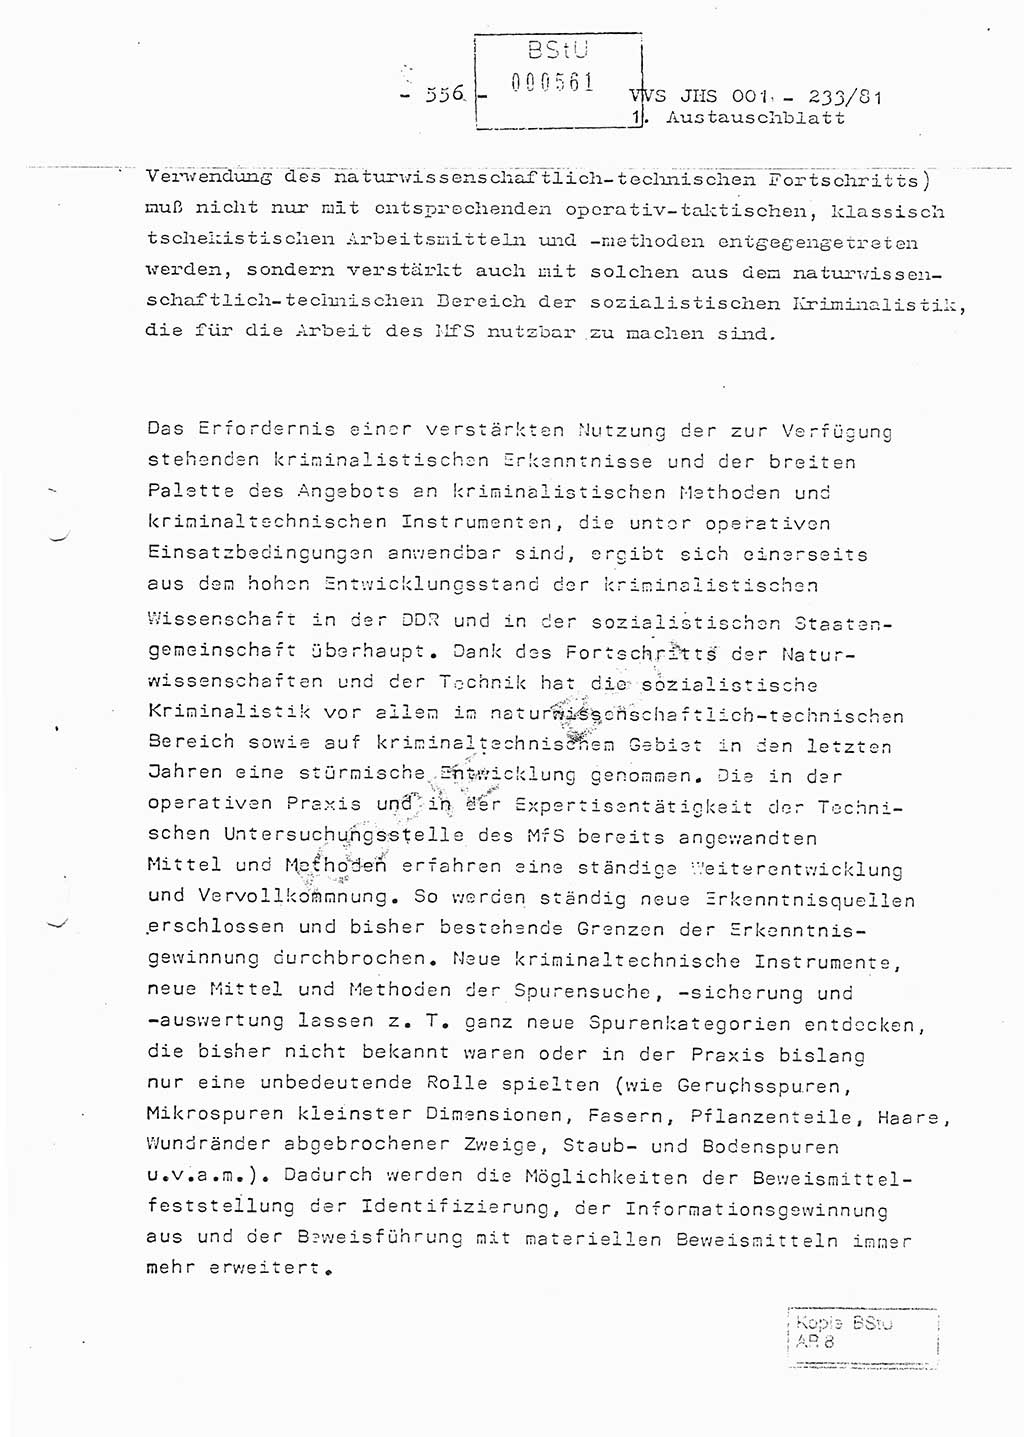 Dissertation Oberstleutnant Horst Zank (JHS), Oberstleutnant Dr. Karl-Heinz Knoblauch (JHS), Oberstleutnant Gustav-Adolf Kowalewski (HA Ⅸ), Oberstleutnant Wolfgang Plötner (HA Ⅸ), Ministerium für Staatssicherheit (MfS) [Deutsche Demokratische Republik (DDR)], Juristische Hochschule (JHS), Vertrauliche Verschlußsache (VVS) o001-233/81, Potsdam 1981, Blatt 556 (Diss. MfS DDR JHS VVS o001-233/81 1981, Bl. 556)